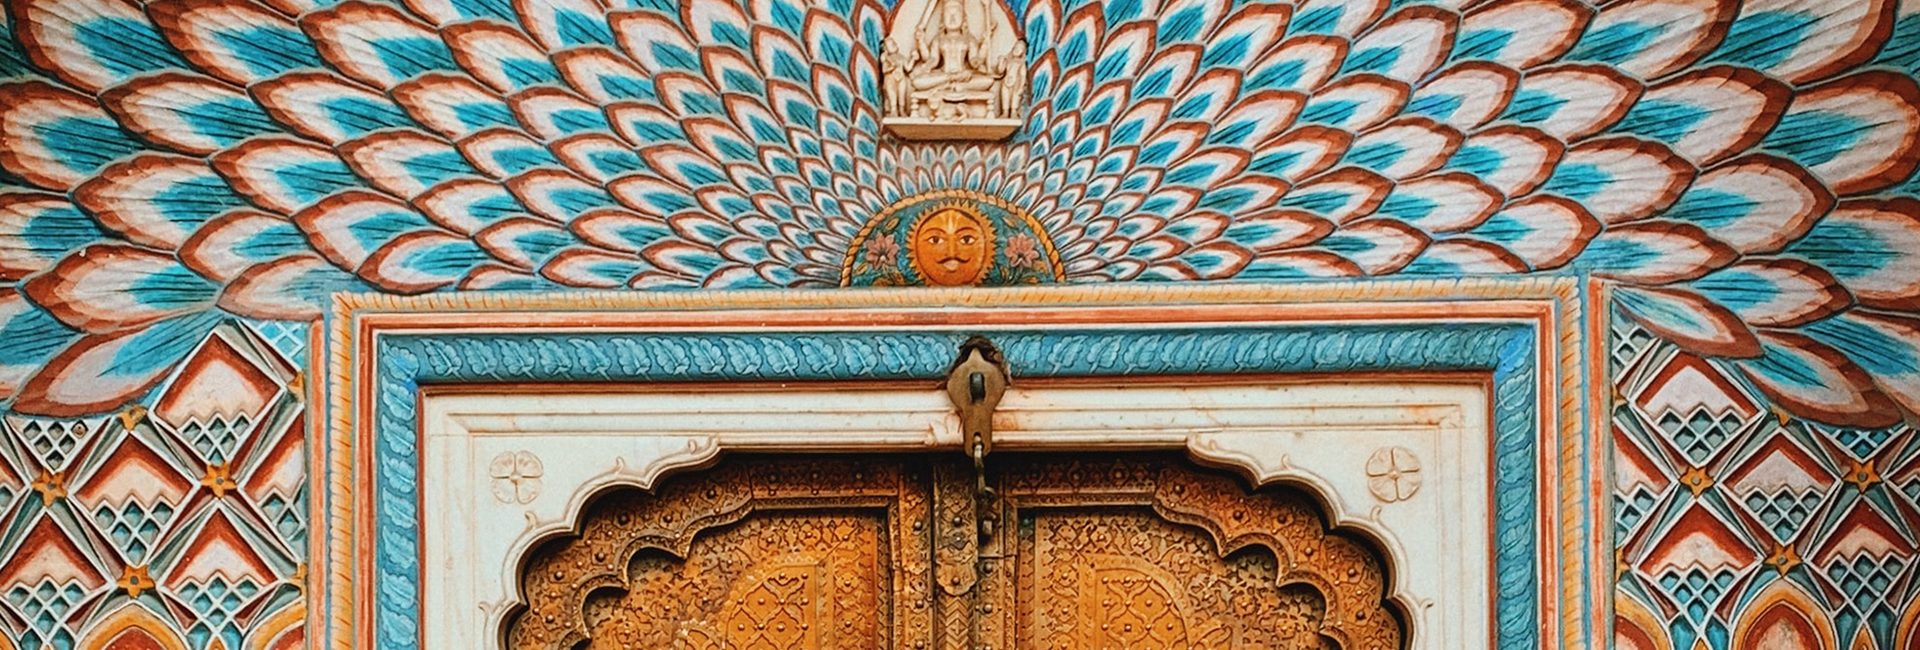 ornate-gate-jaipur-india